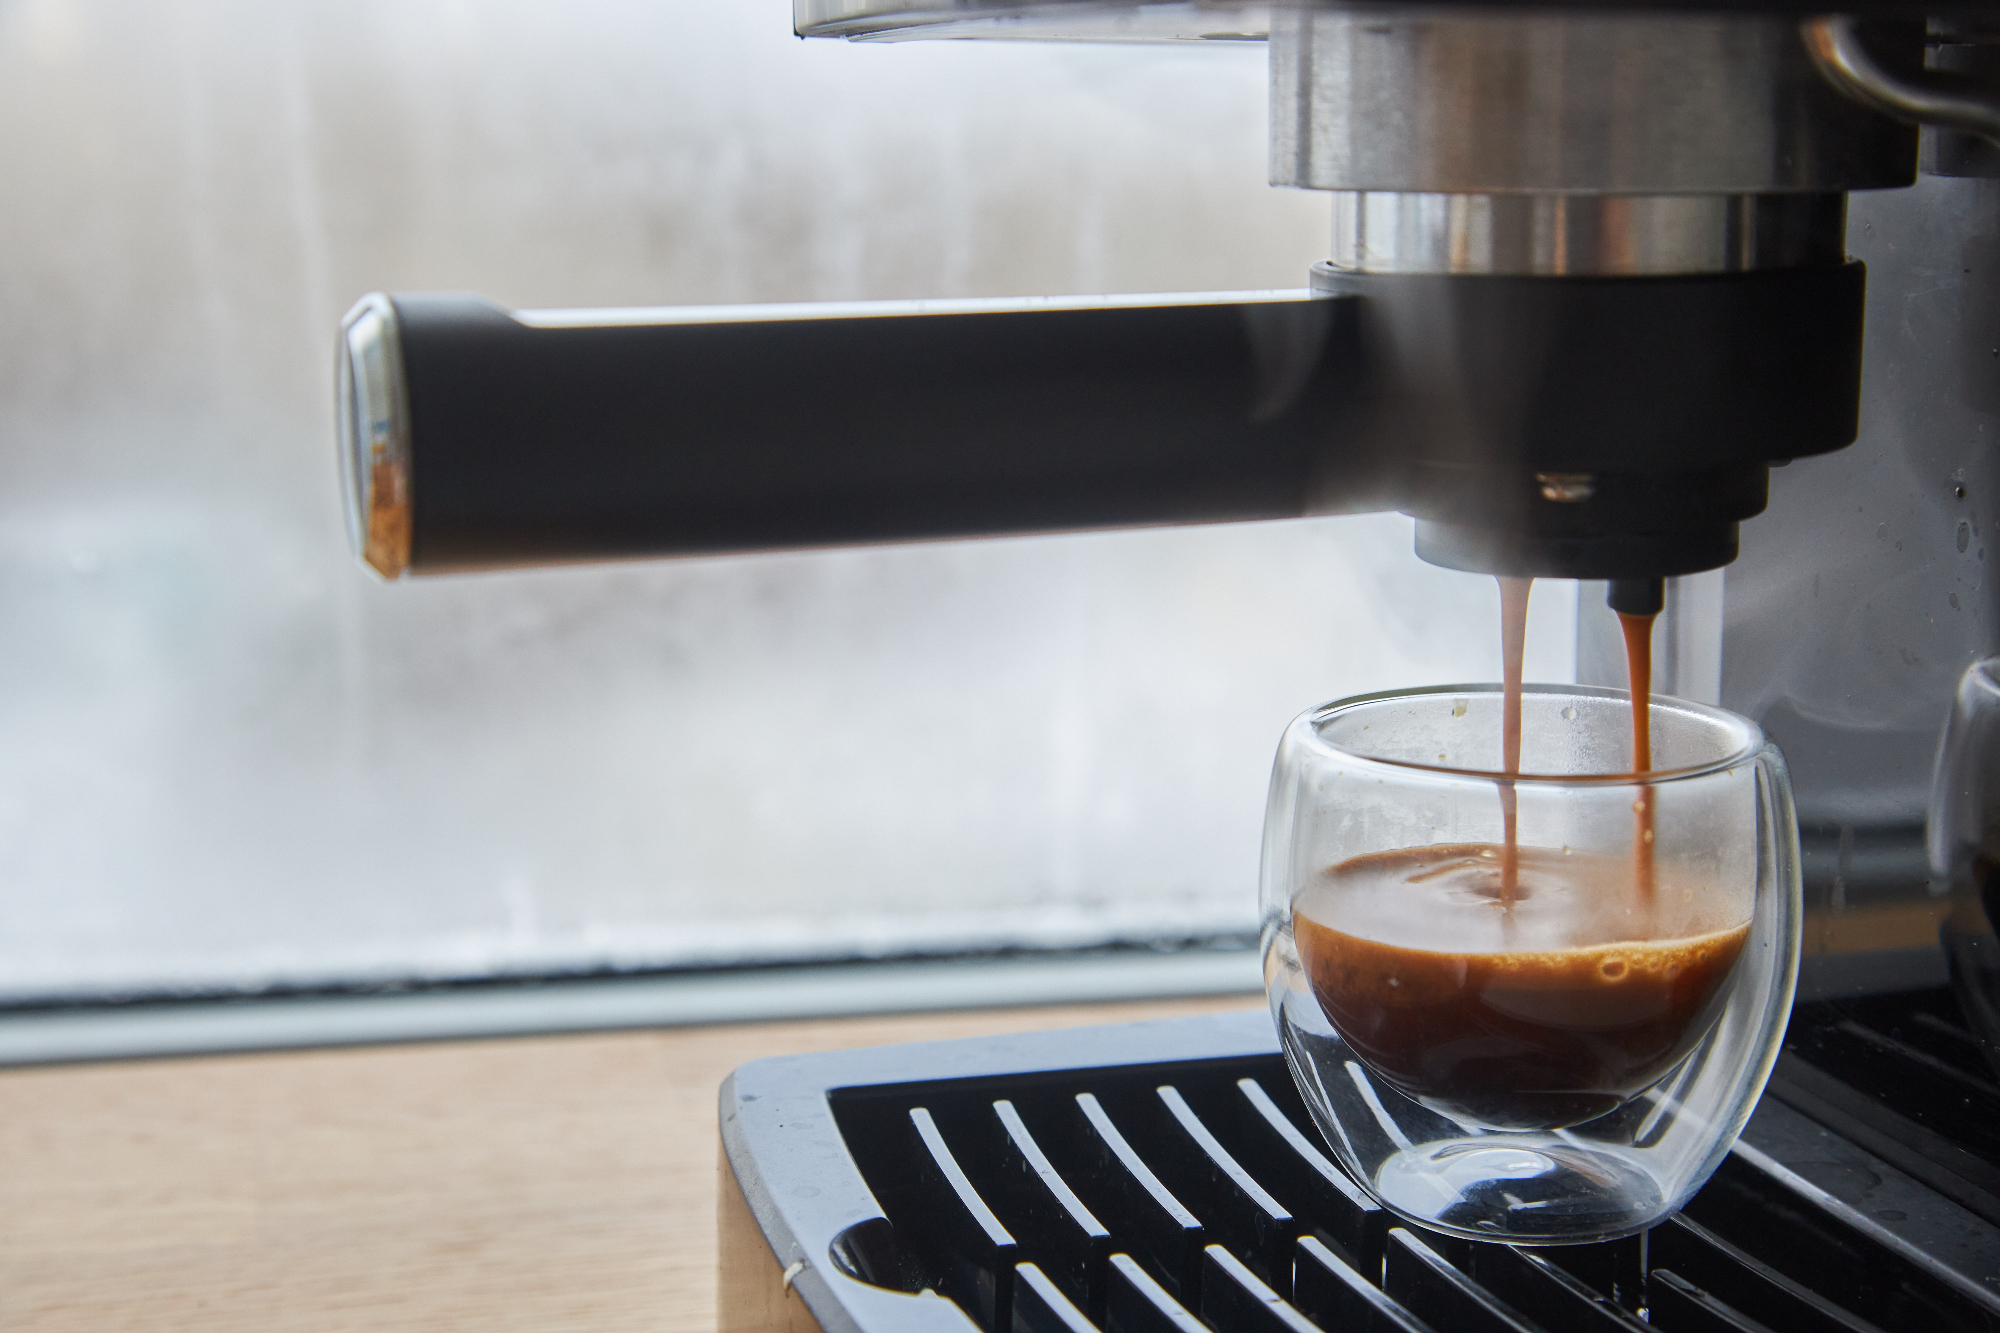 Ako volite mliječne kave vaš aparat za kavu mora imati pjenilicu